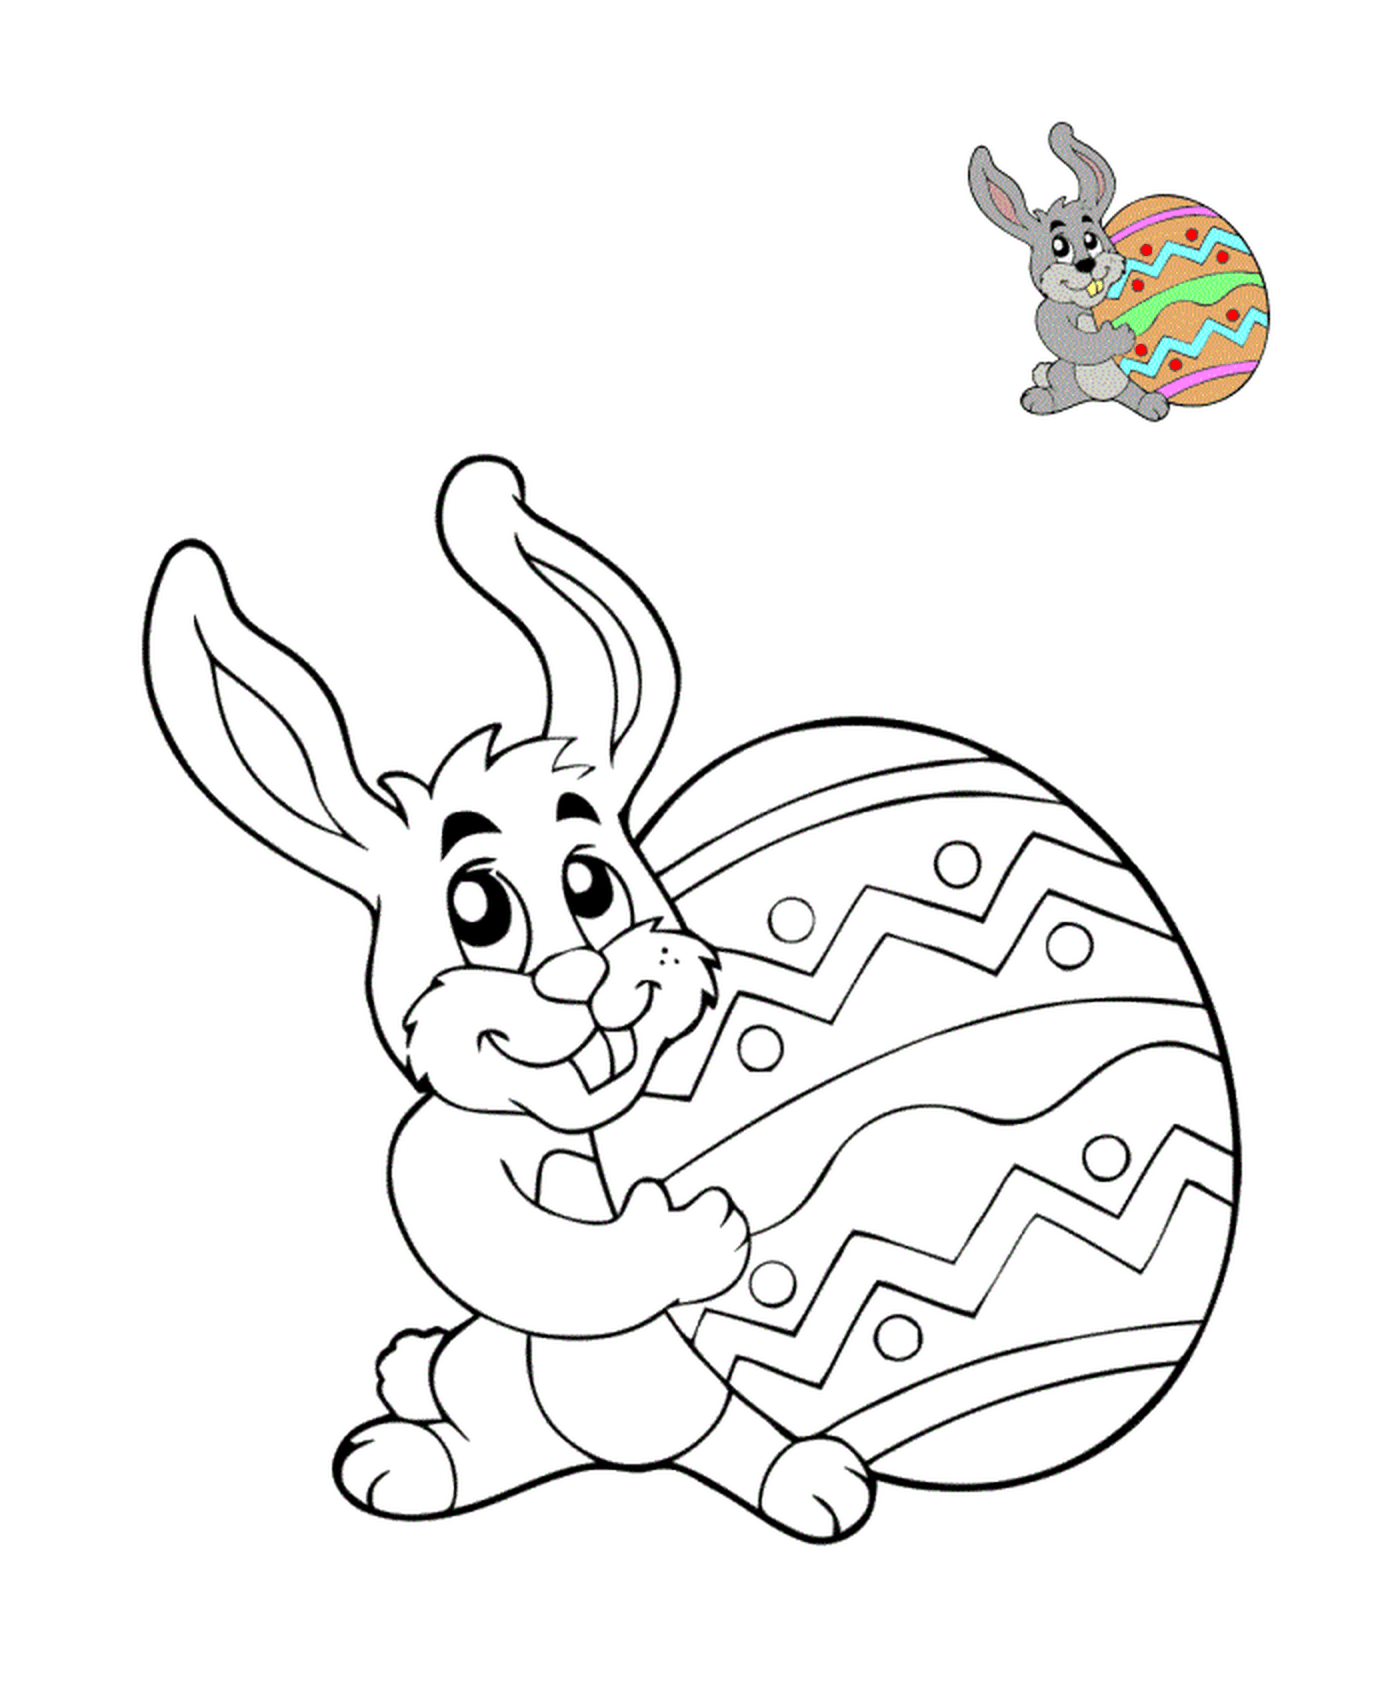  Huevo de Pascua con Bugs Bunny 